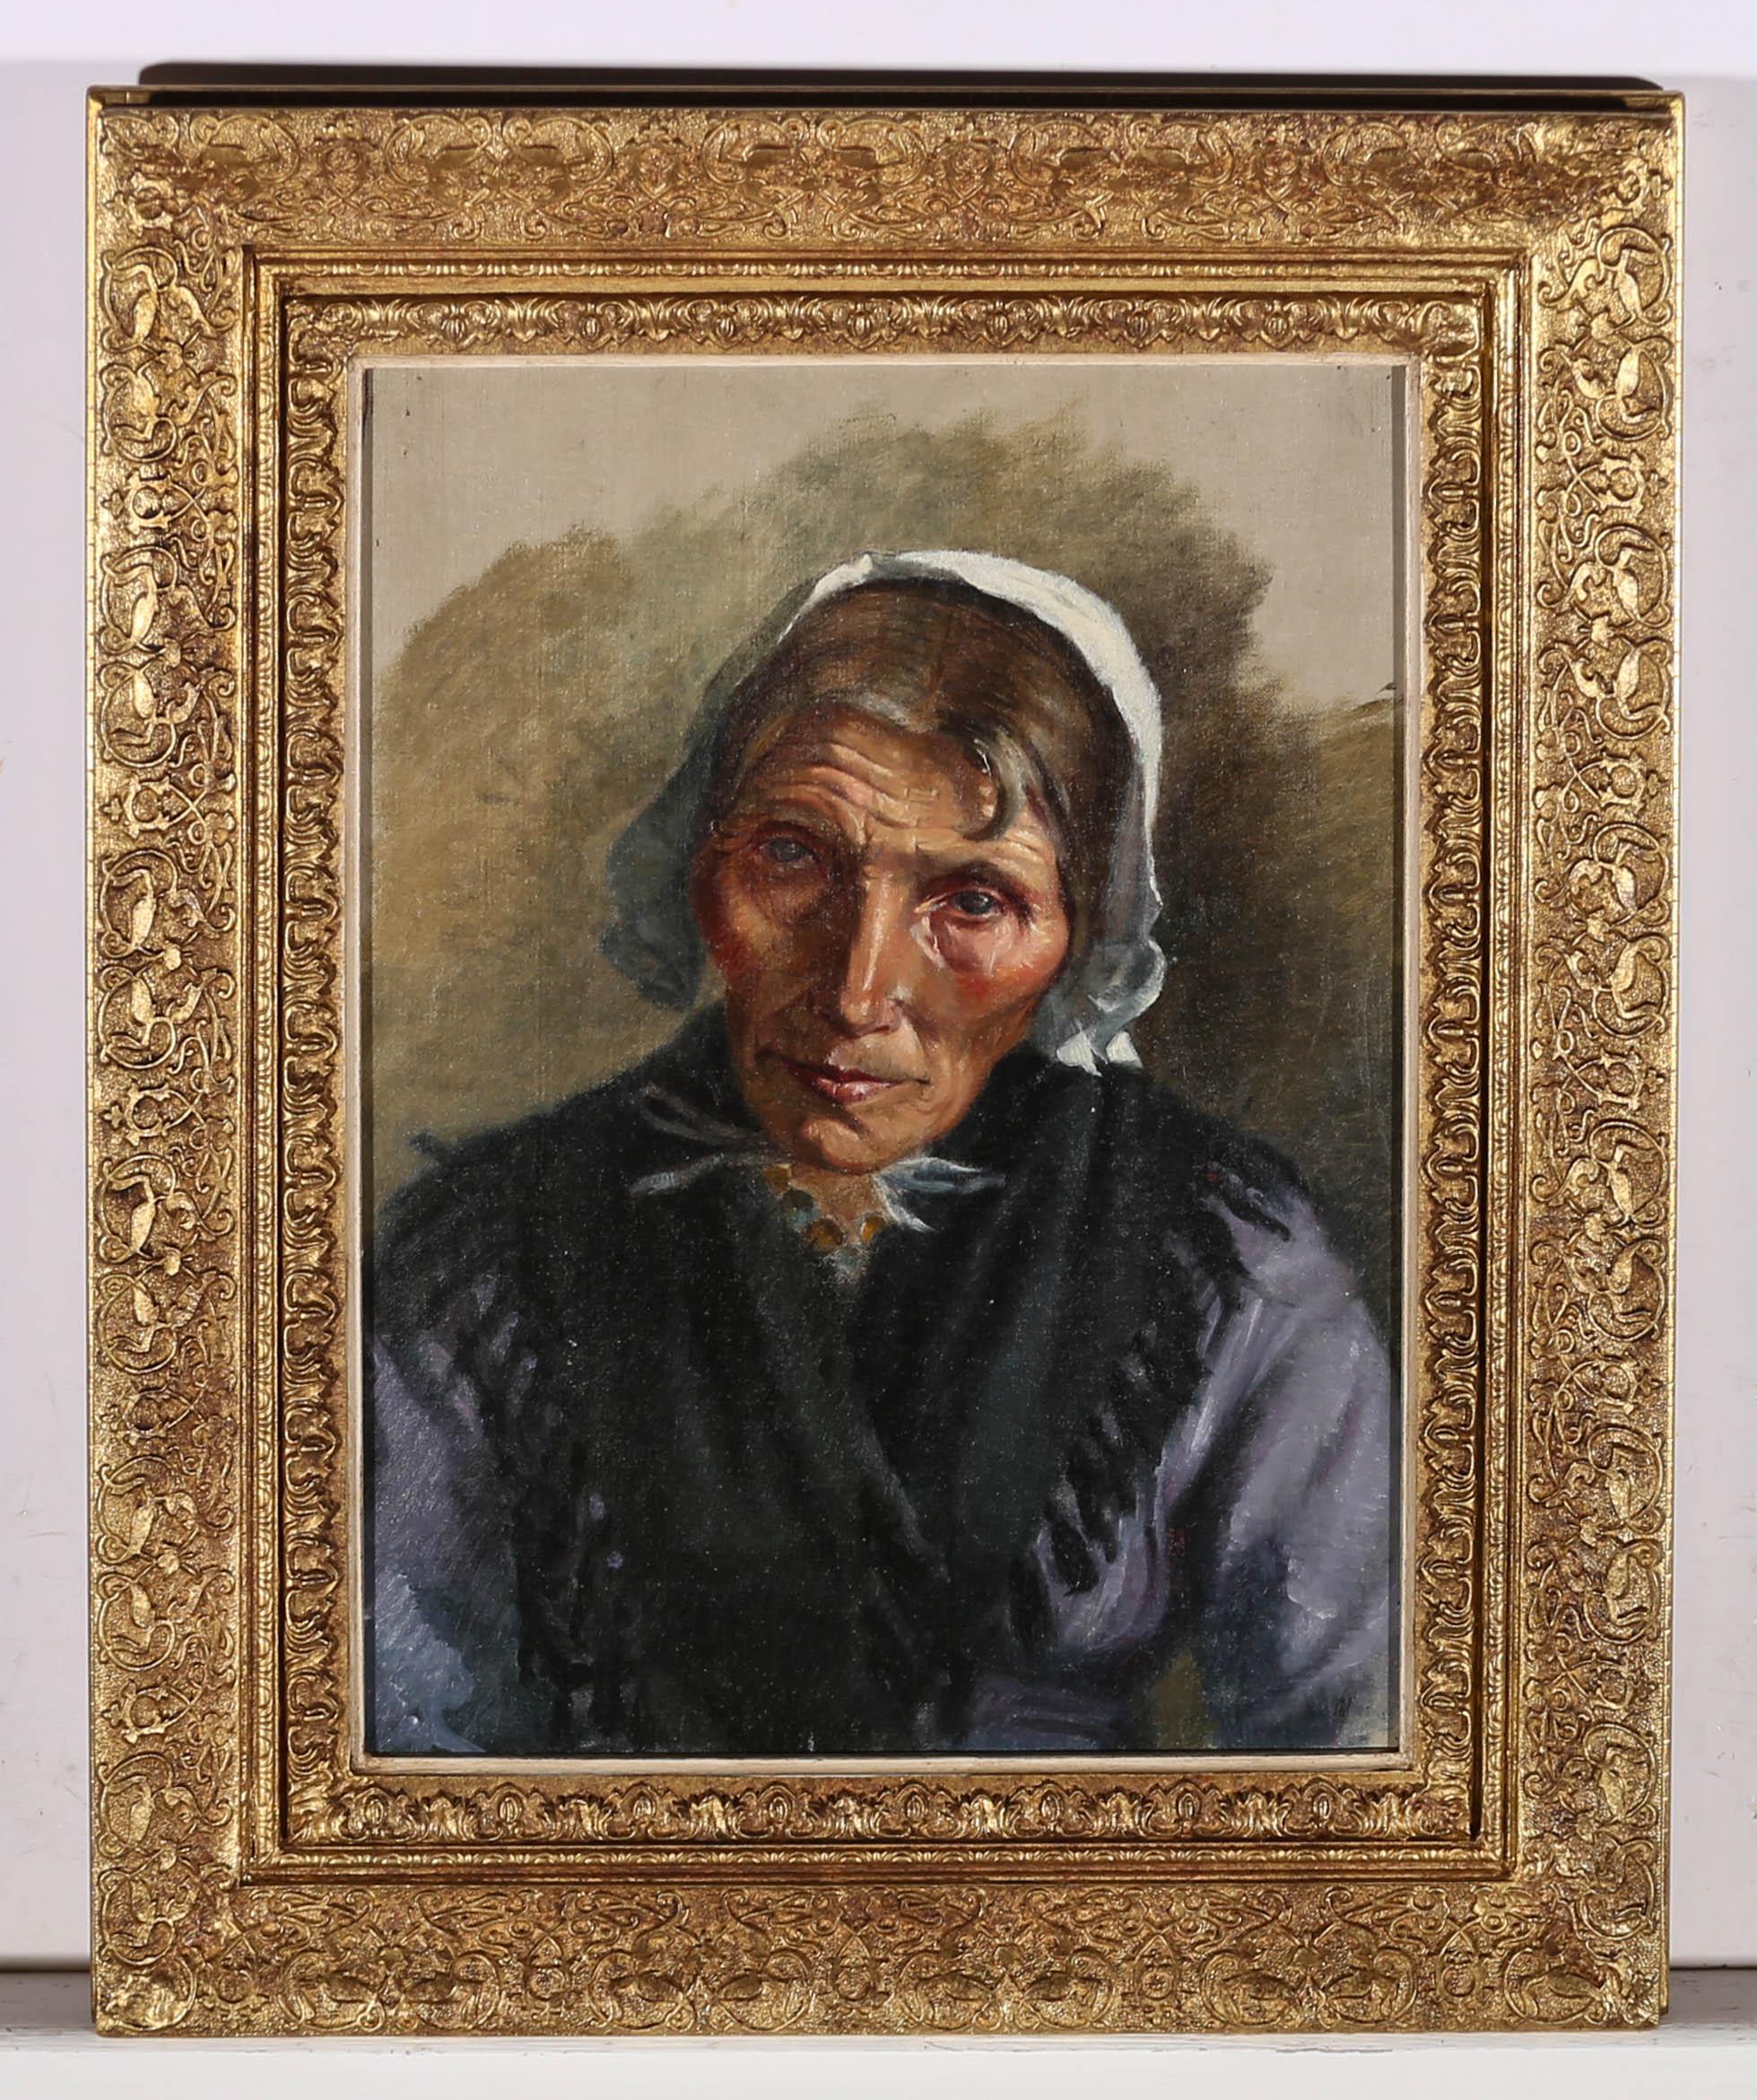 Unknown Portrait Painting – Ölgemälde des späten 19. Jahrhunderts – Die ältere Frau